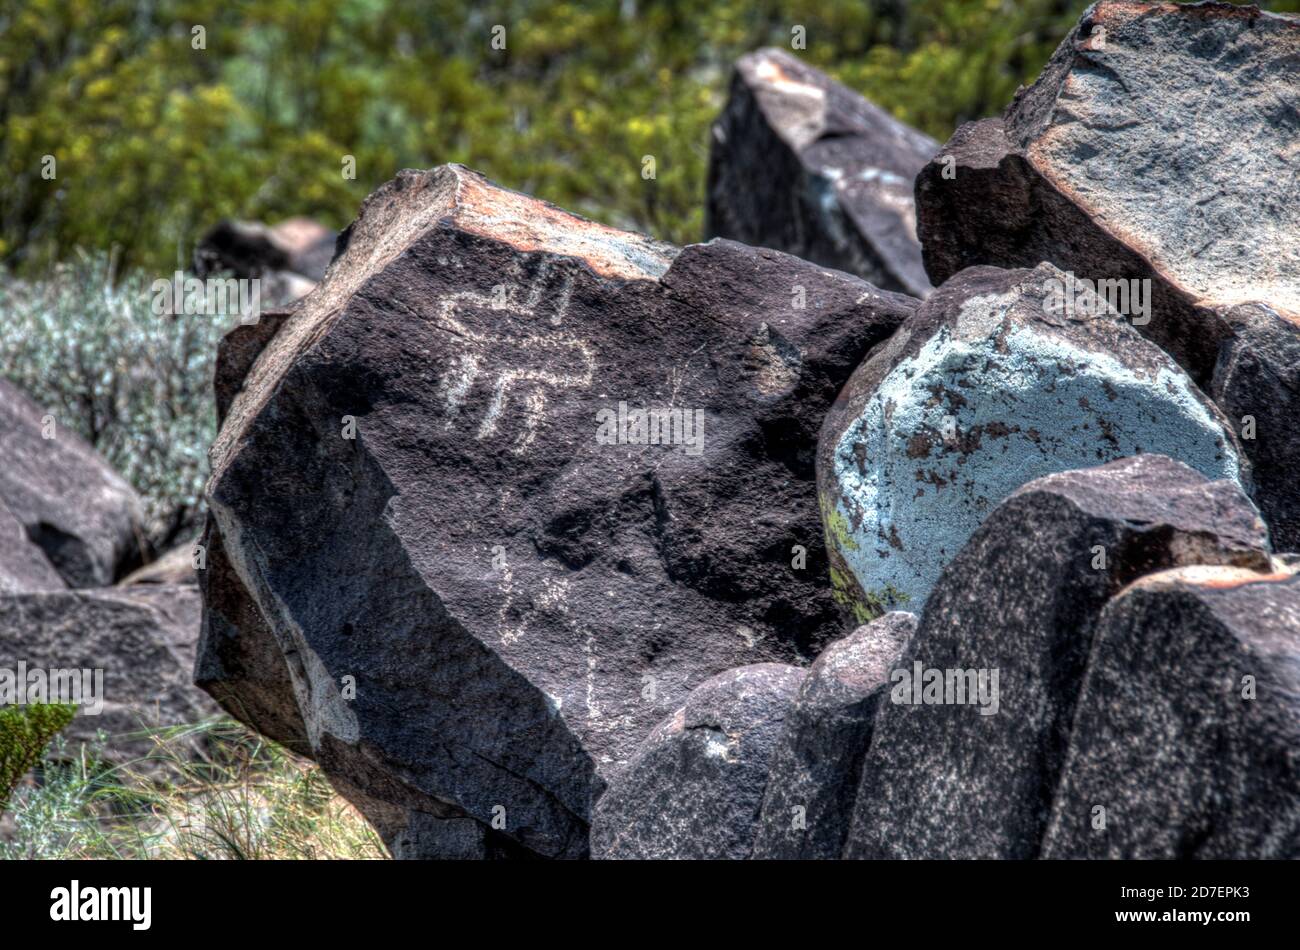 Prehistoric petroglyphs, rock art, at the Three Rivers Petroglyphs Site near Tularosa, New Mexico. Stock Photo